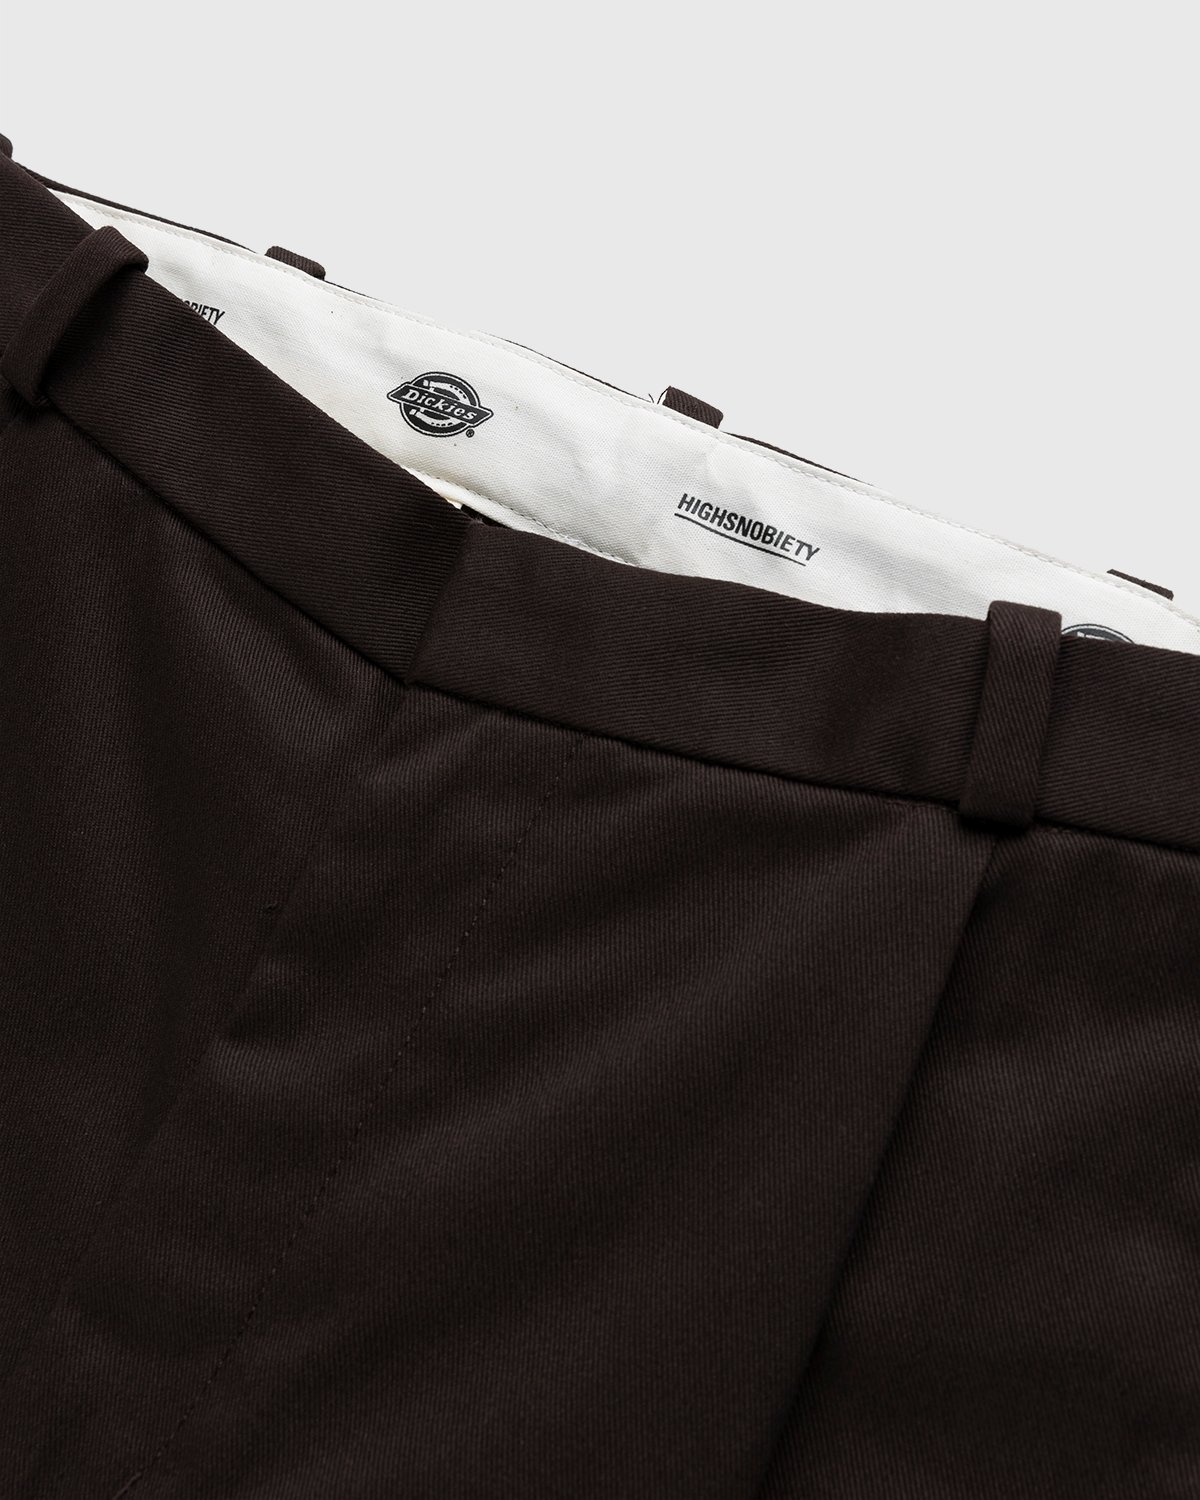 Highsnobiety x Dickies - Pleated Work Pants Dark Brown - Clothing - Brown - Image 3